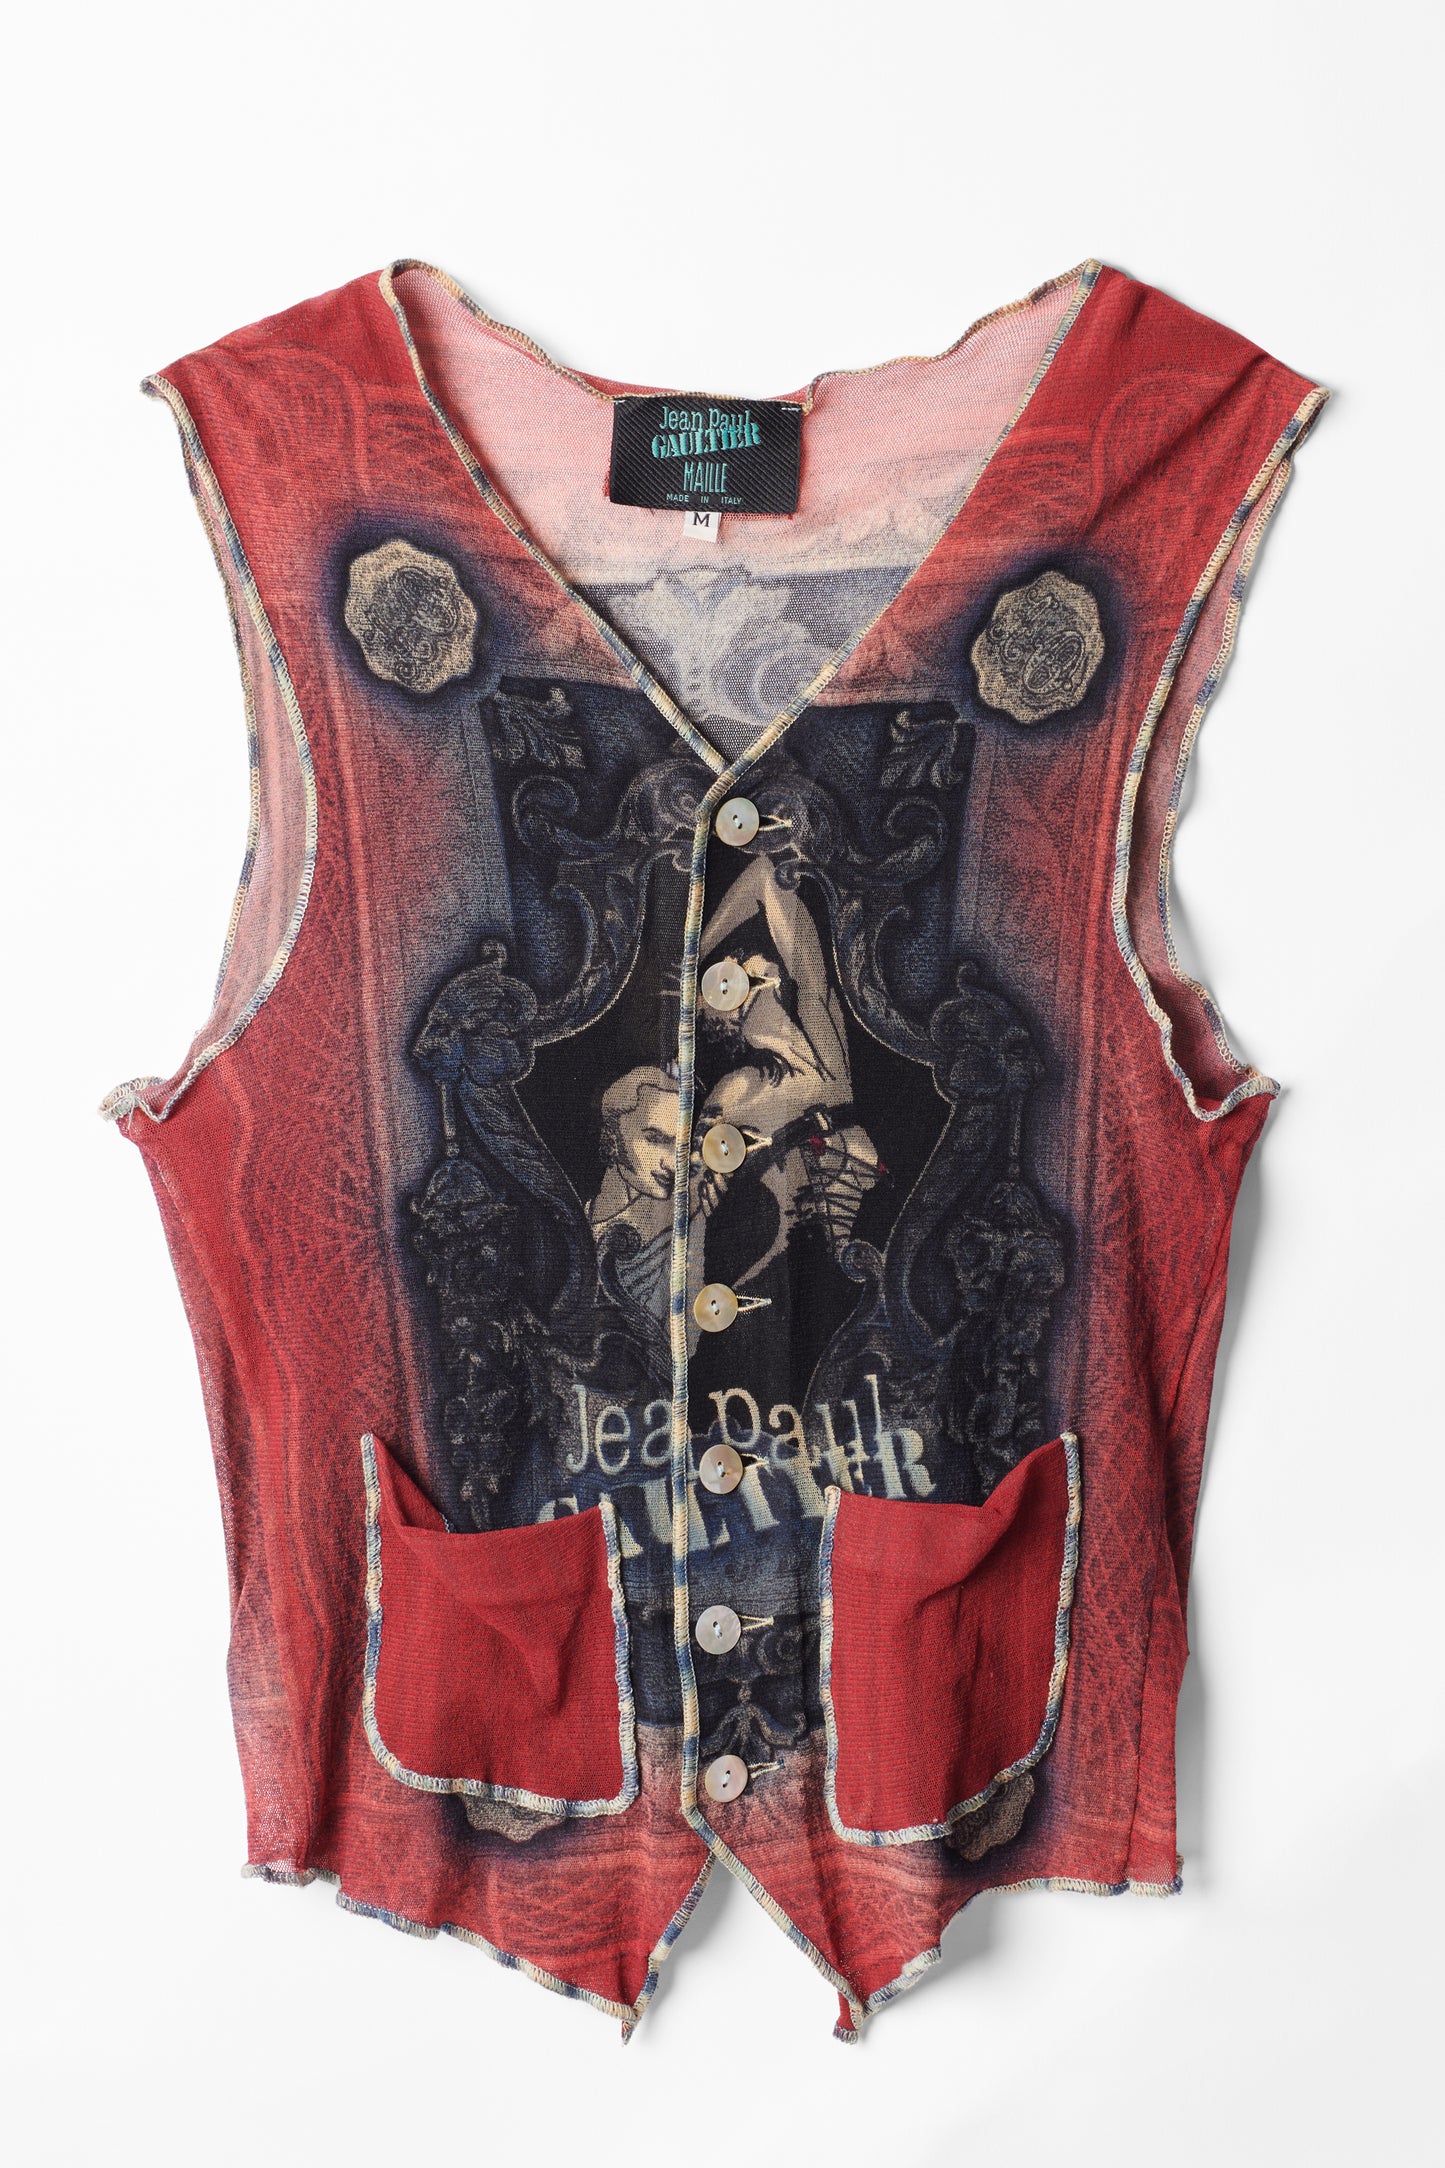 Vintage Mesh Printed Waistcoat Vest